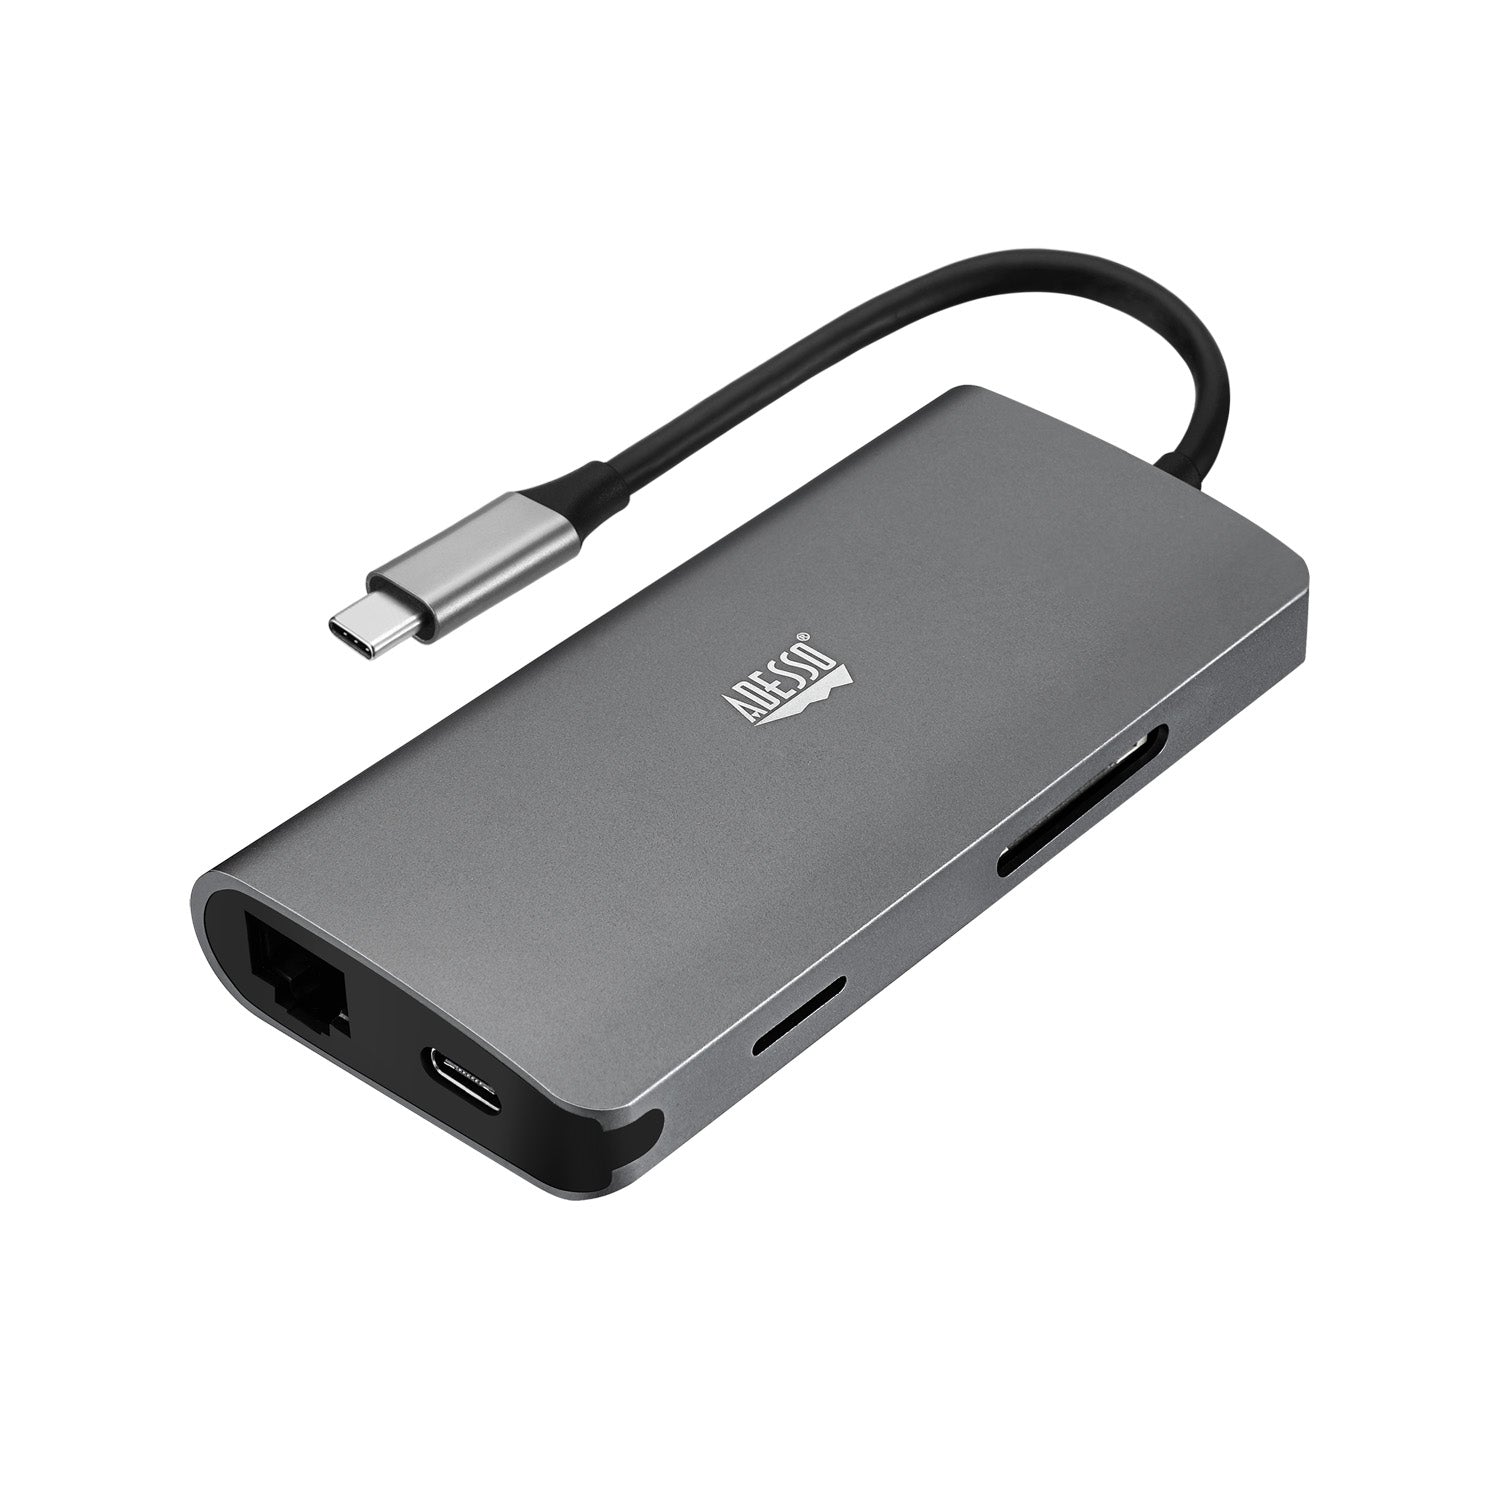 Adesso AUH-4030 notebook dock/port replicator USB 3.2 Gen 1 (3.1 Gen 1) Type-C Grey